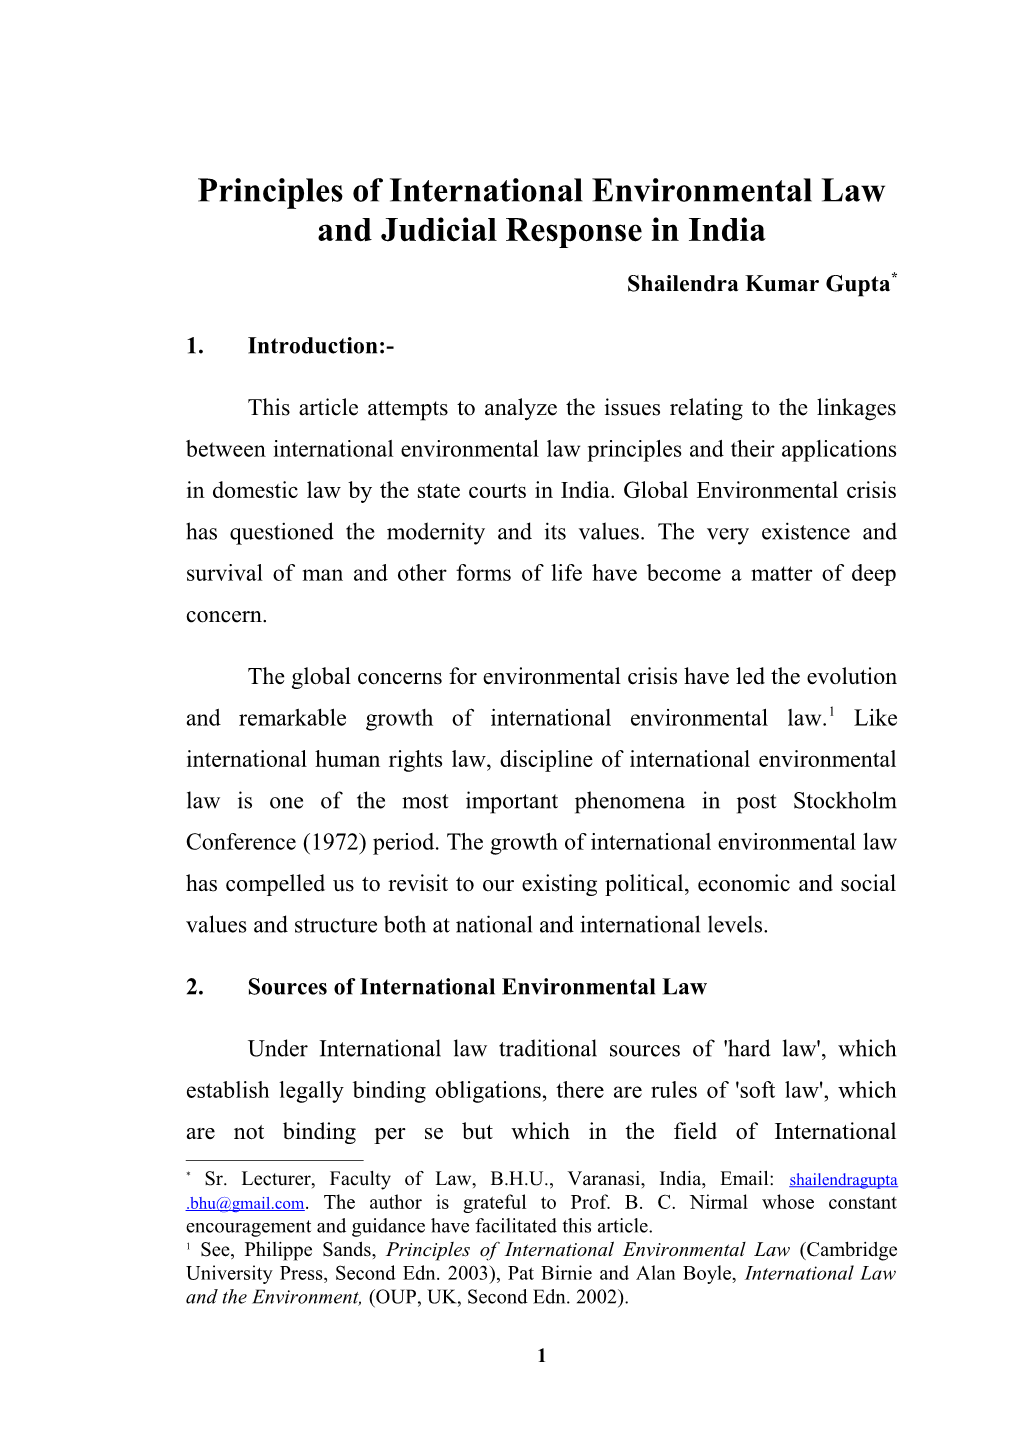 Principles of Int'l Envt'l Law and Judicial Response in India